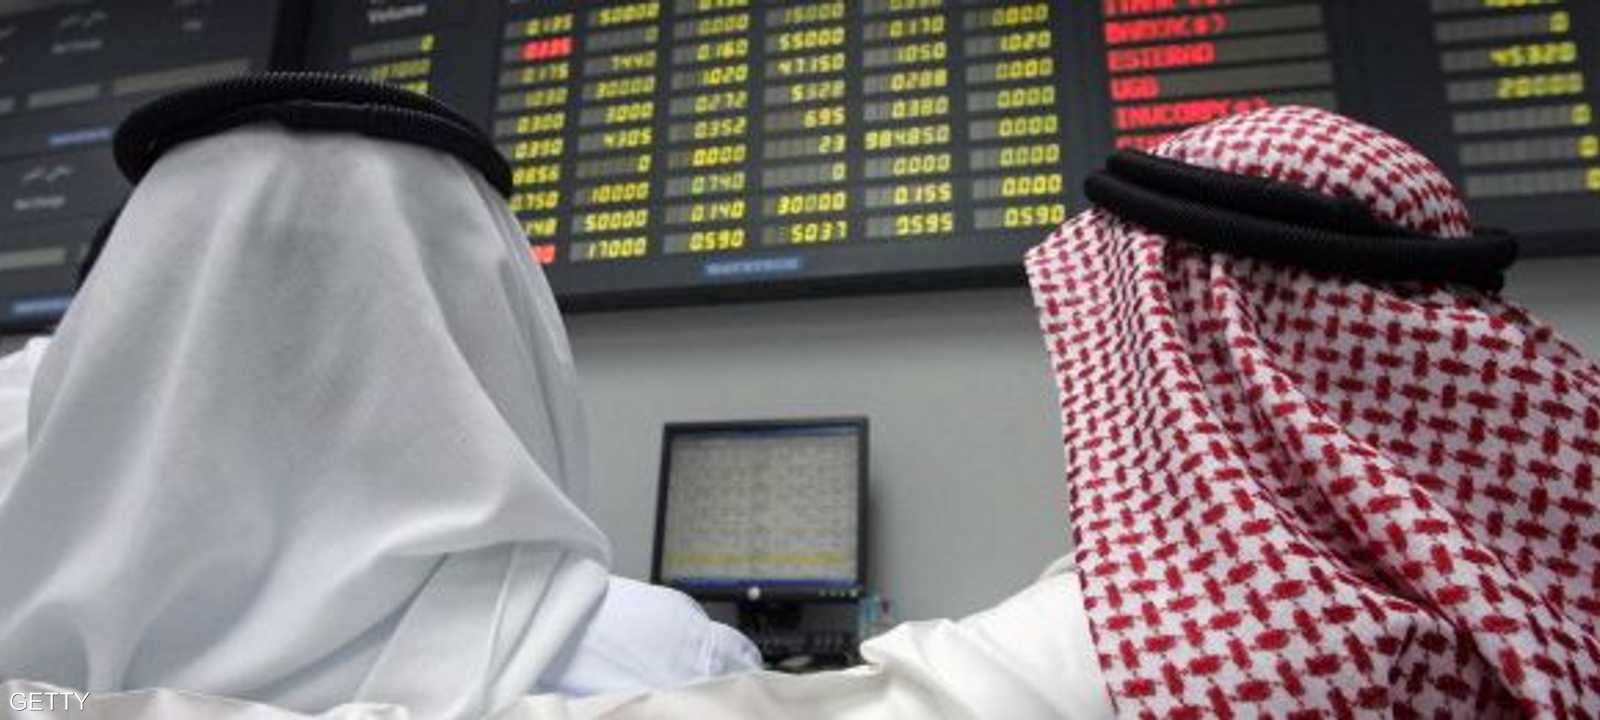 أسواق الخليج تأثرت بهبوط سعر النفط